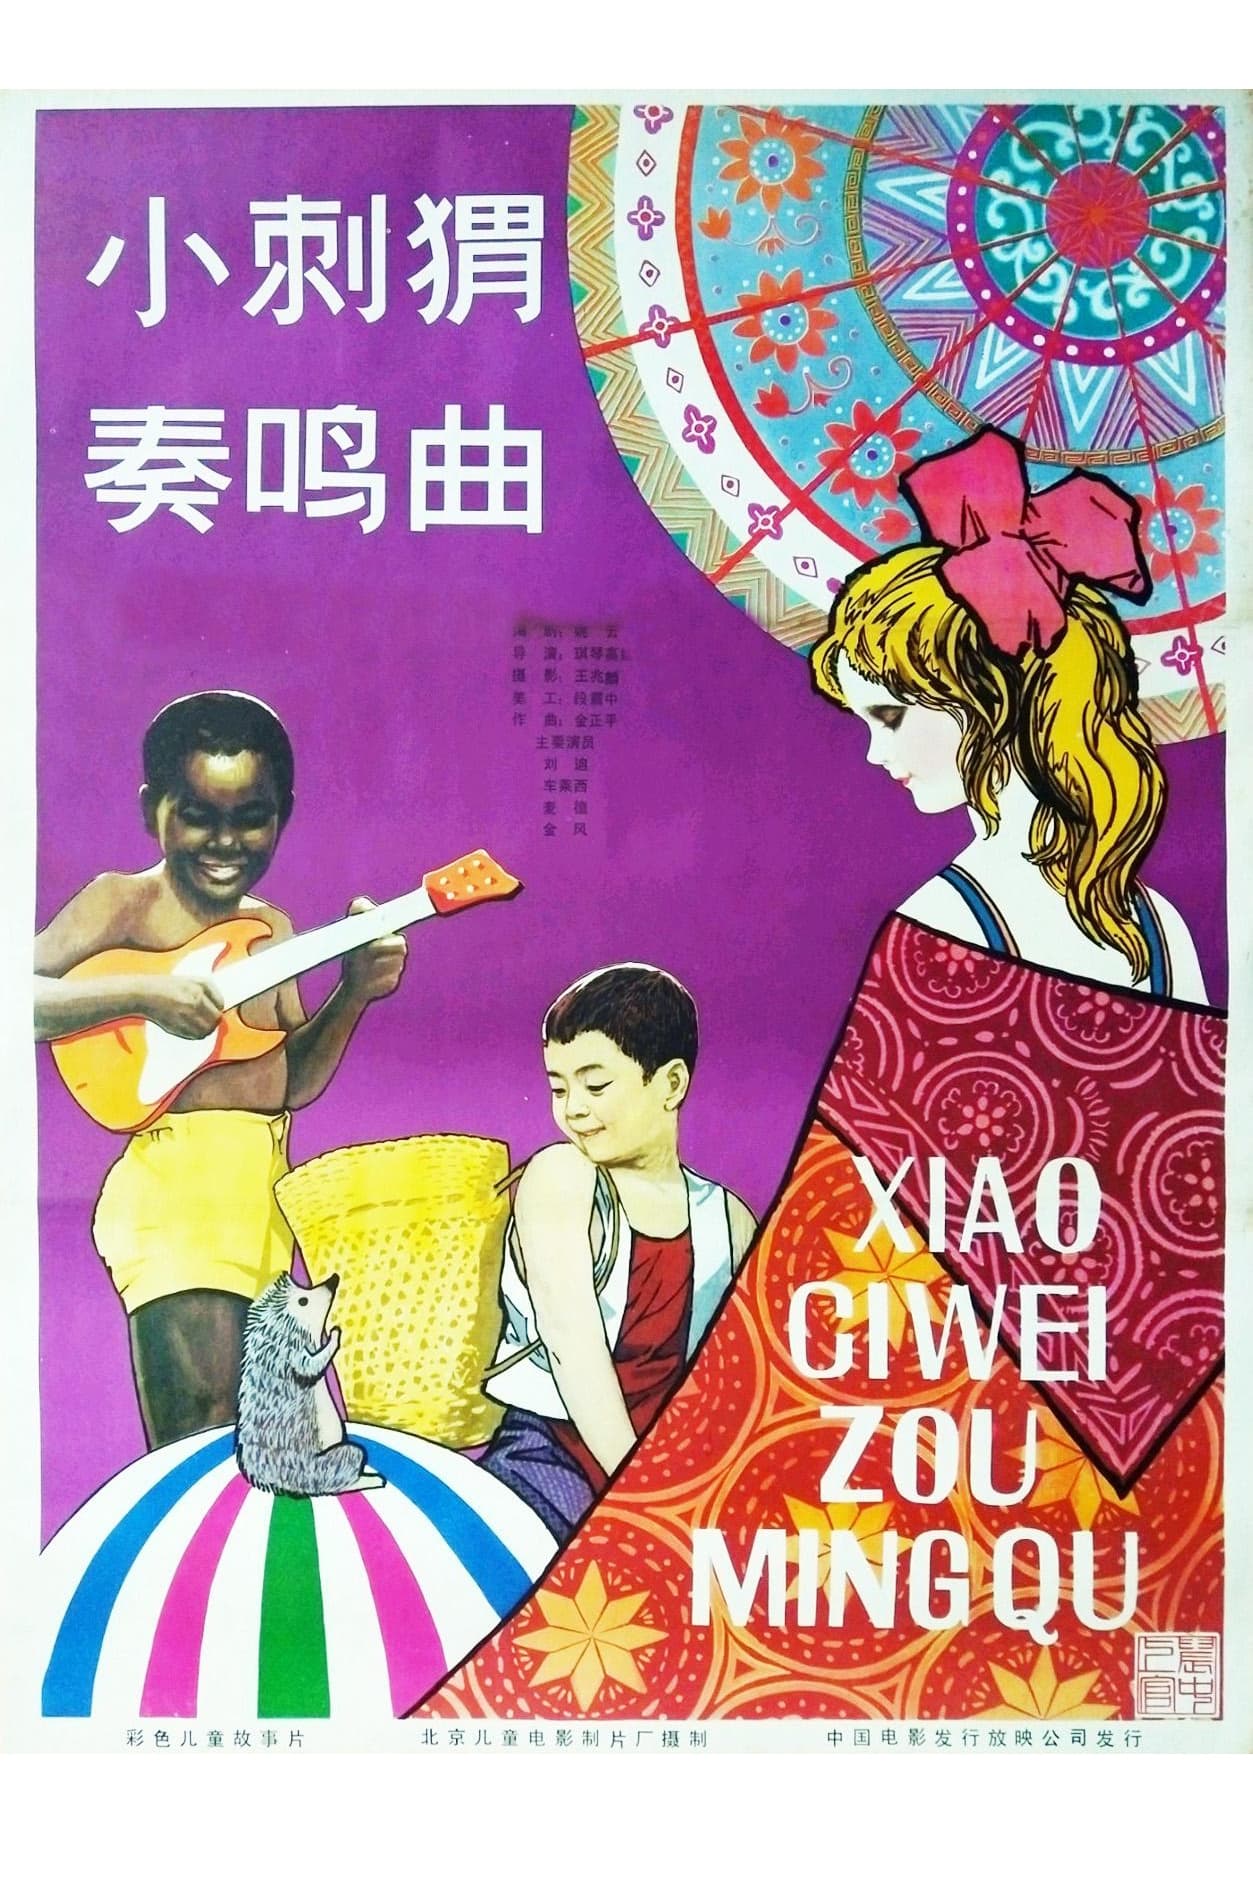 Xiao Ci Wei Zou Ming Qu